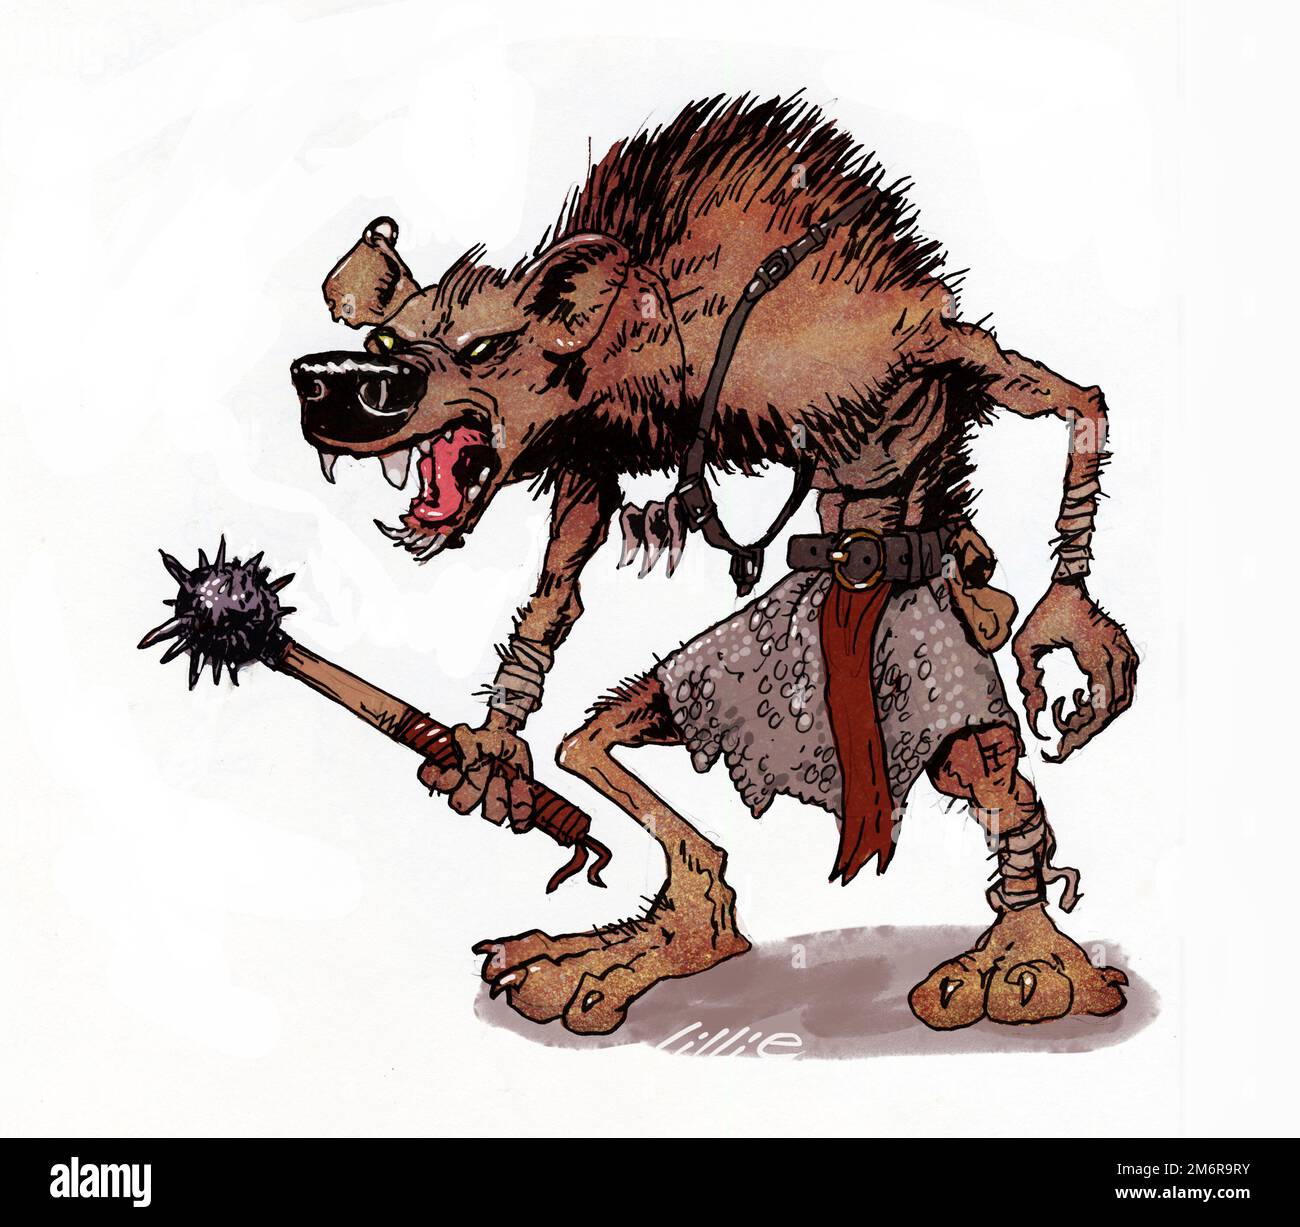 Fantasy Art Illustration eines Zwerges, Hybrid mit menschlichem Körper und hyänenartigem Kopf. Er feierte sein Debüt in Dungeons & Dragons, inspiriert von Lord Dunsanys Gnoles Stockfoto